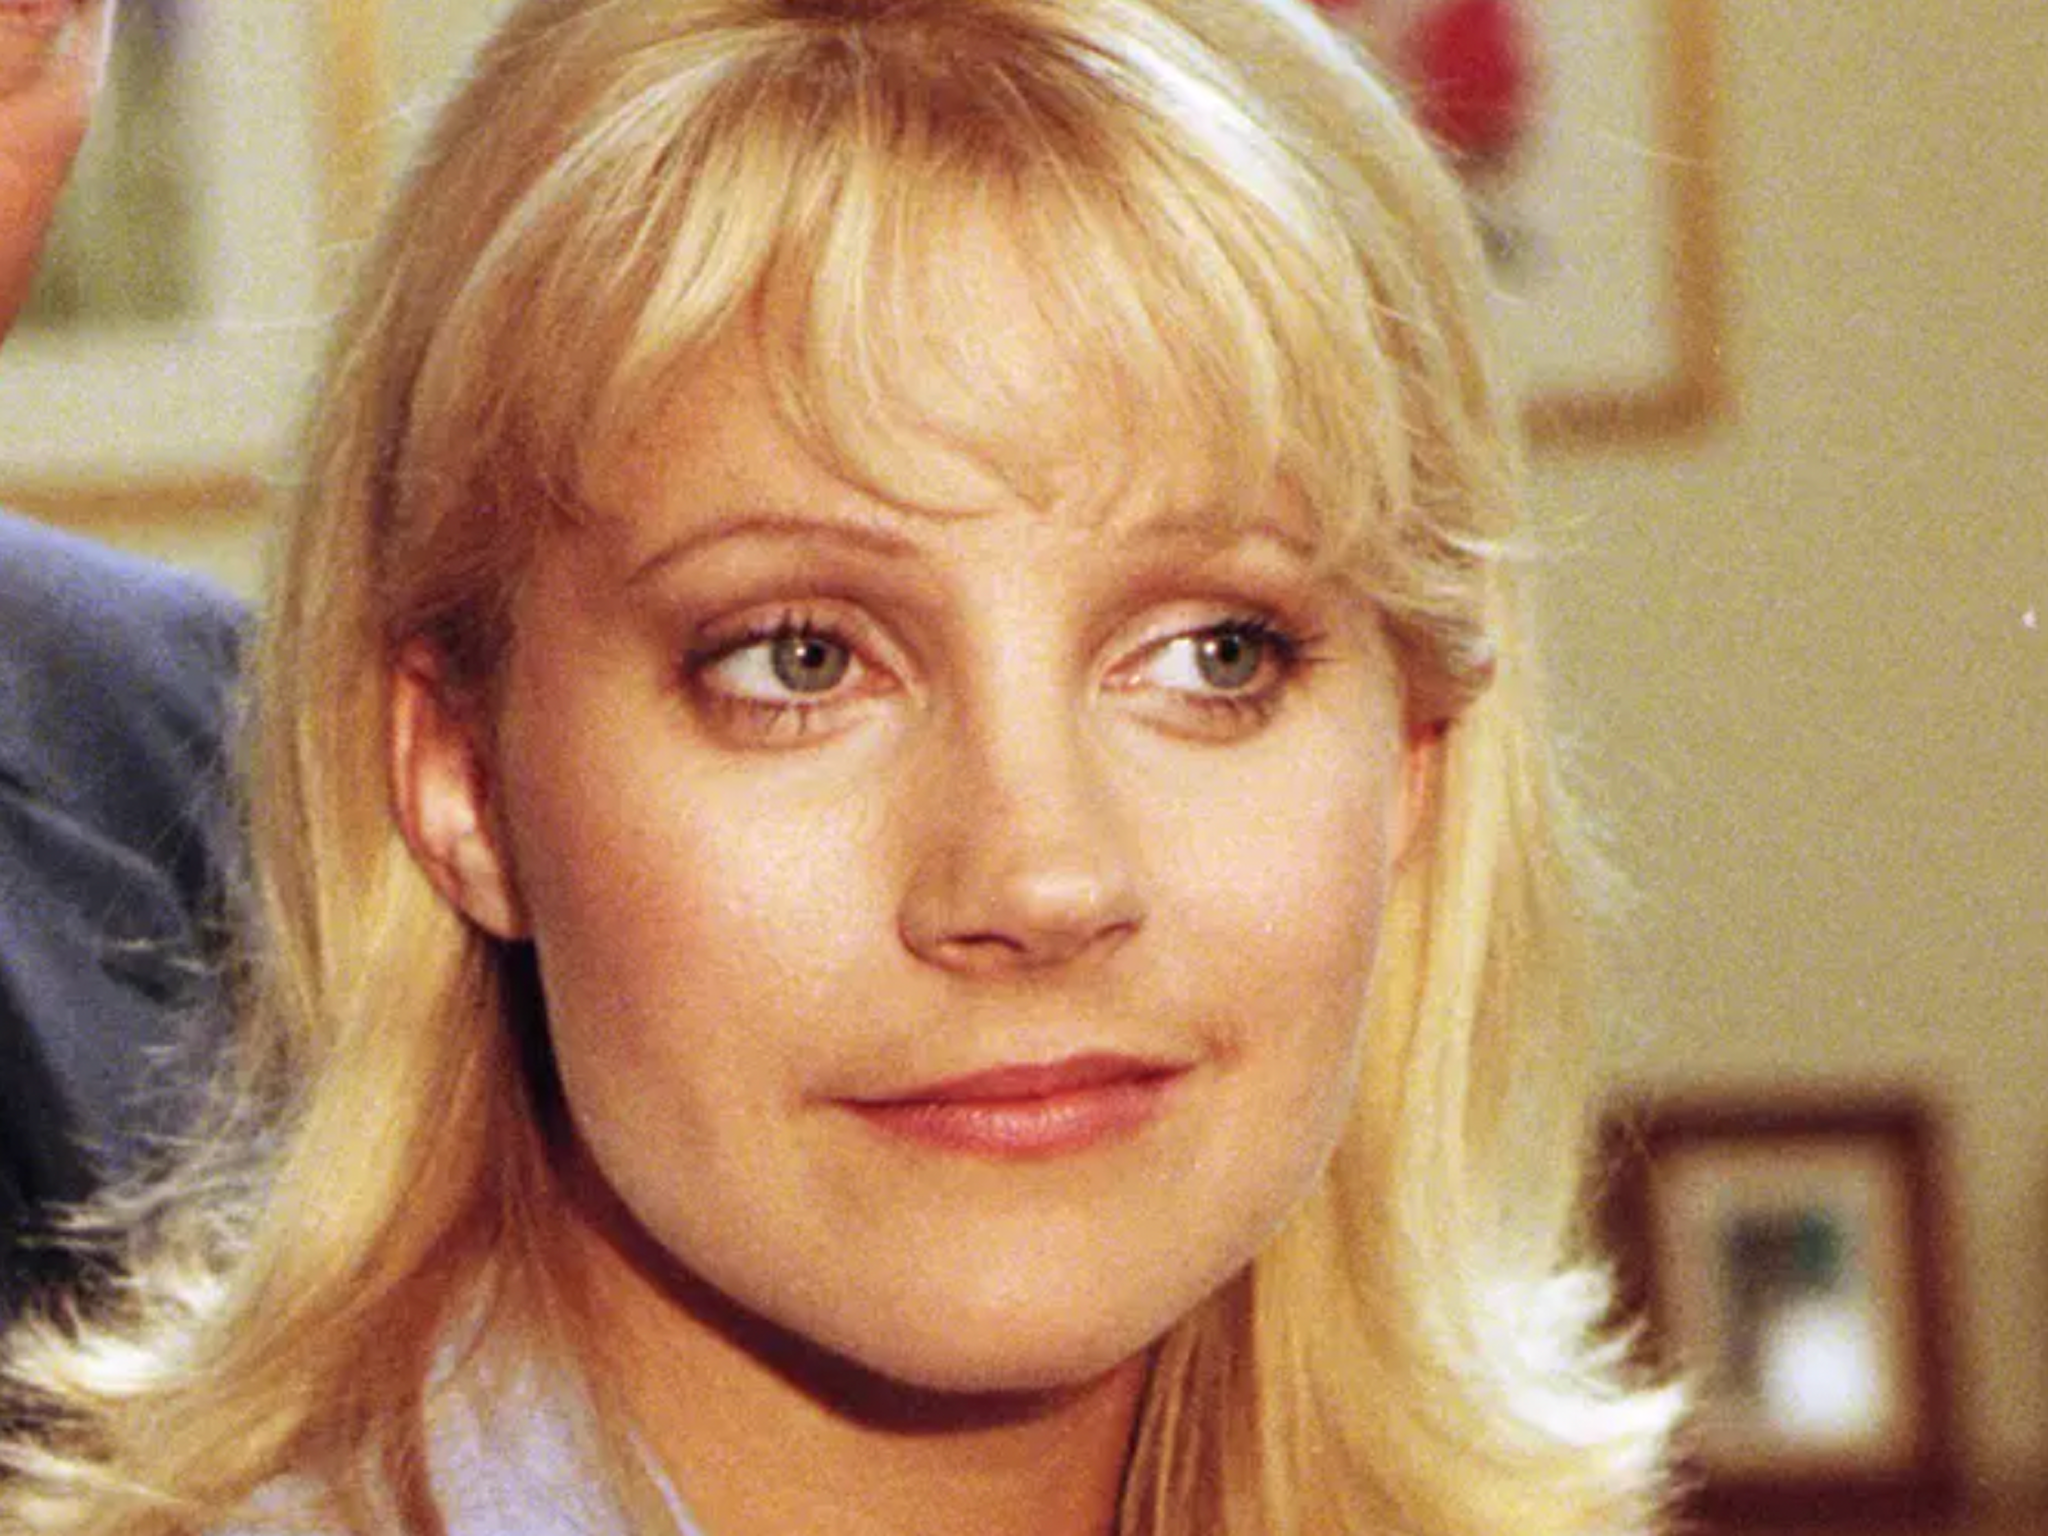 Burrows as Kathy Glover in ‘Emmerdale’ in 1997